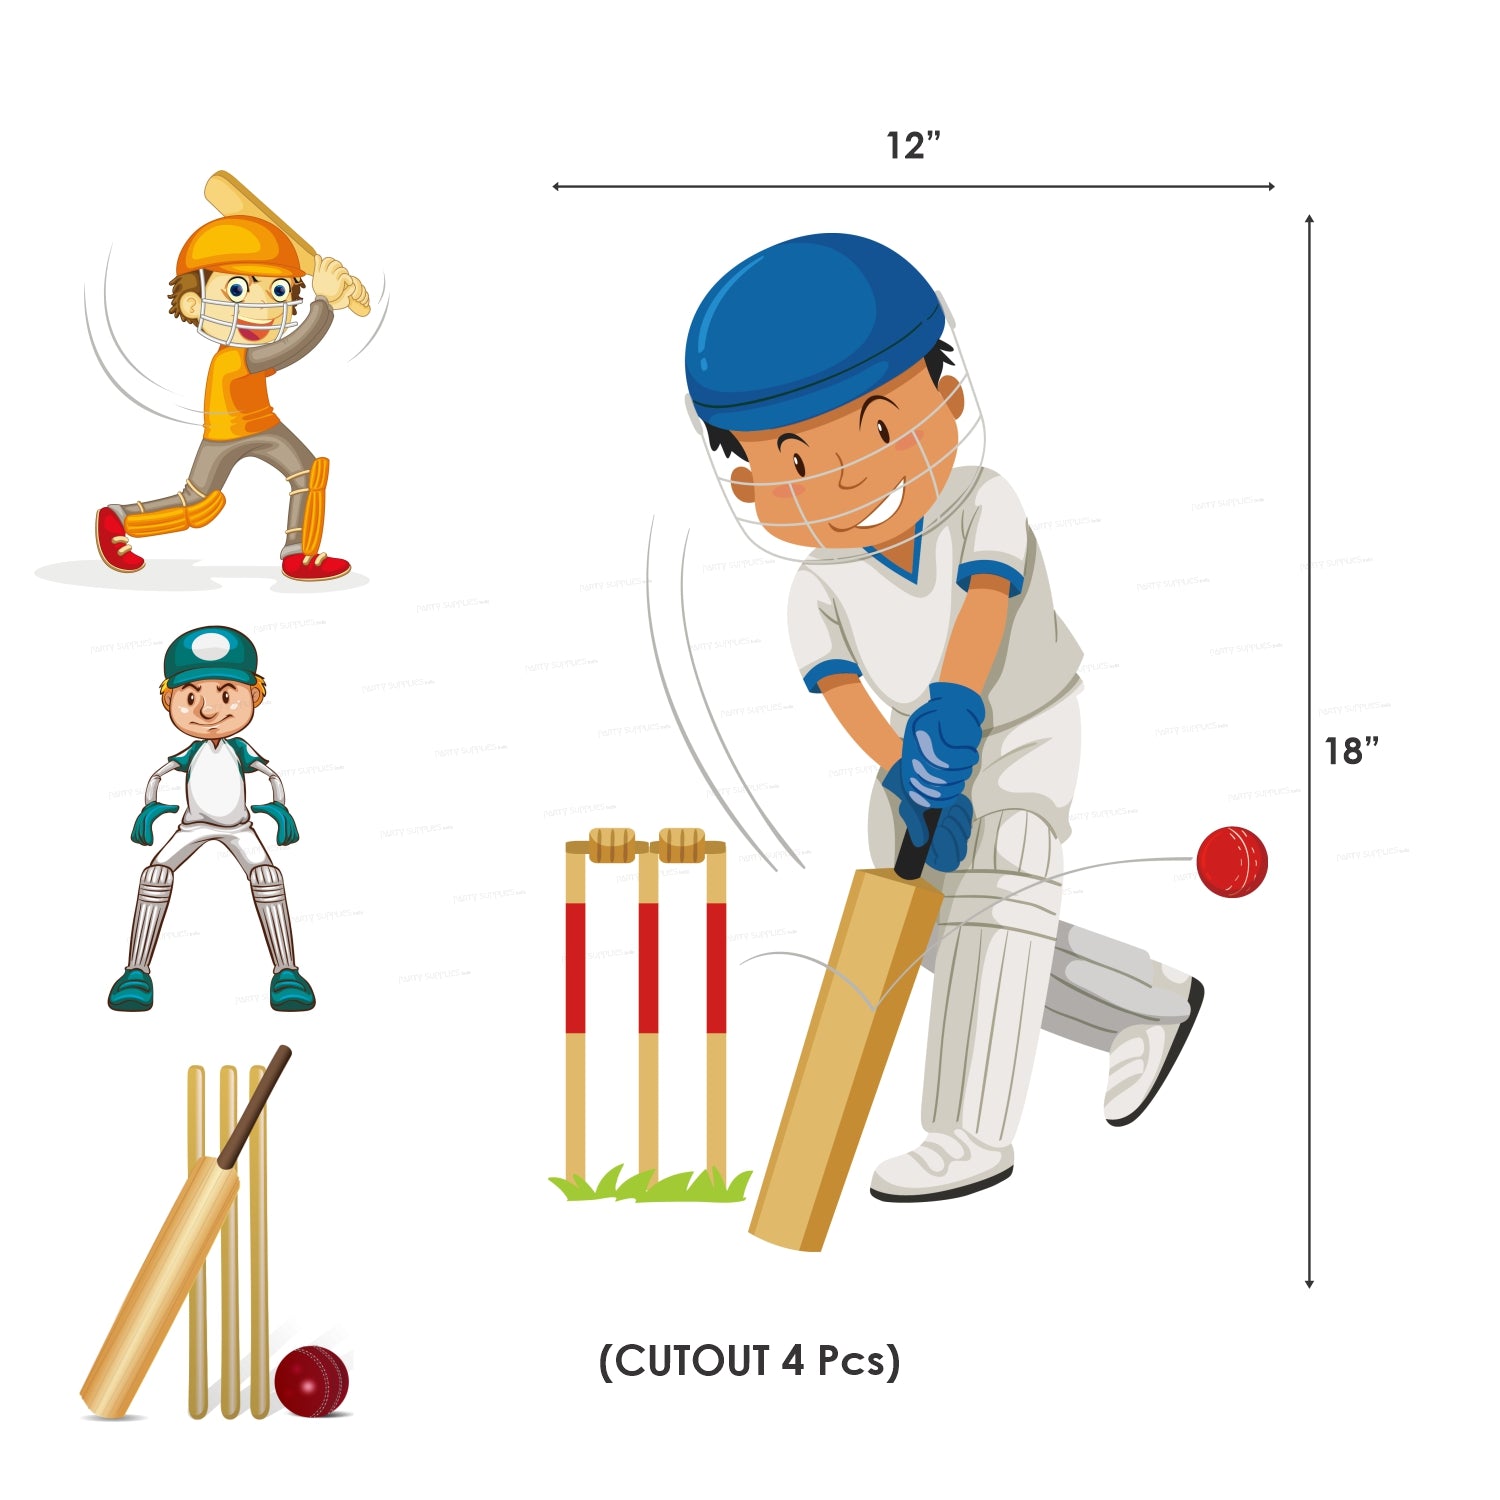 PSI Cricket Theme Classic Kit